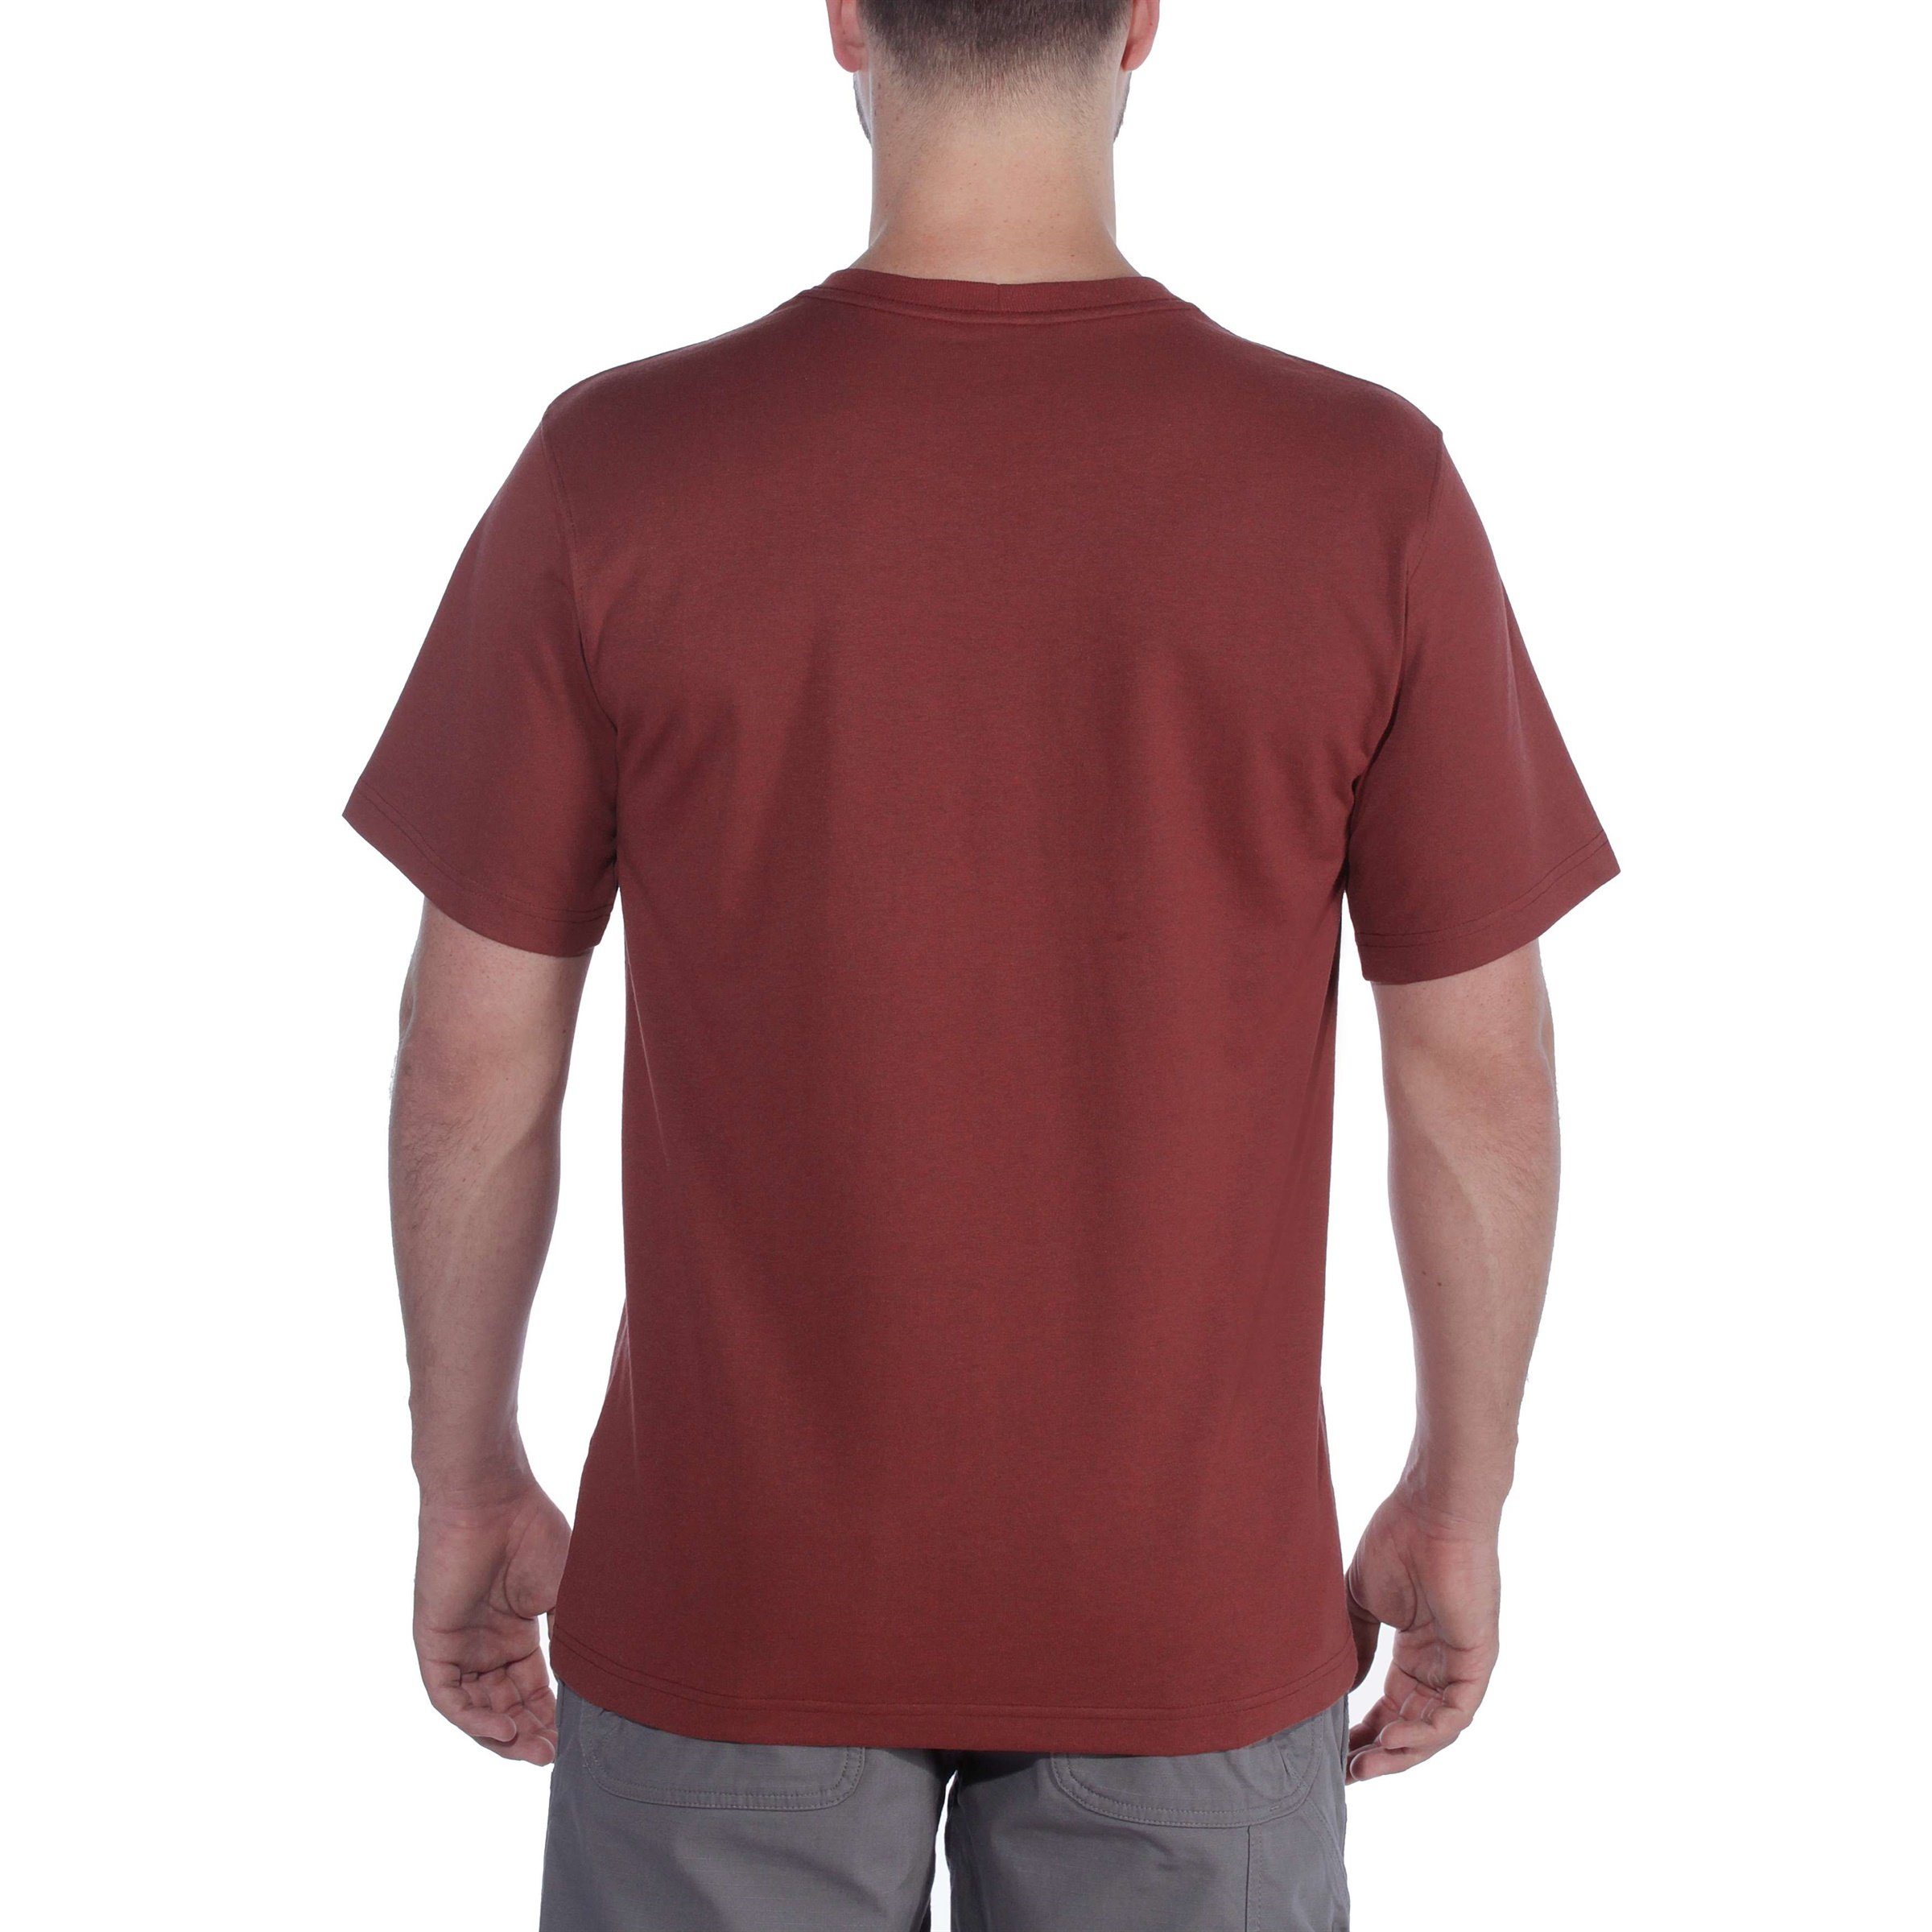 Logo Fit Herren Carhartt Relaxed Adult T-Shirt T-Shirt Short-Sleeve elm heather Carhartt Graphic Heavyweight